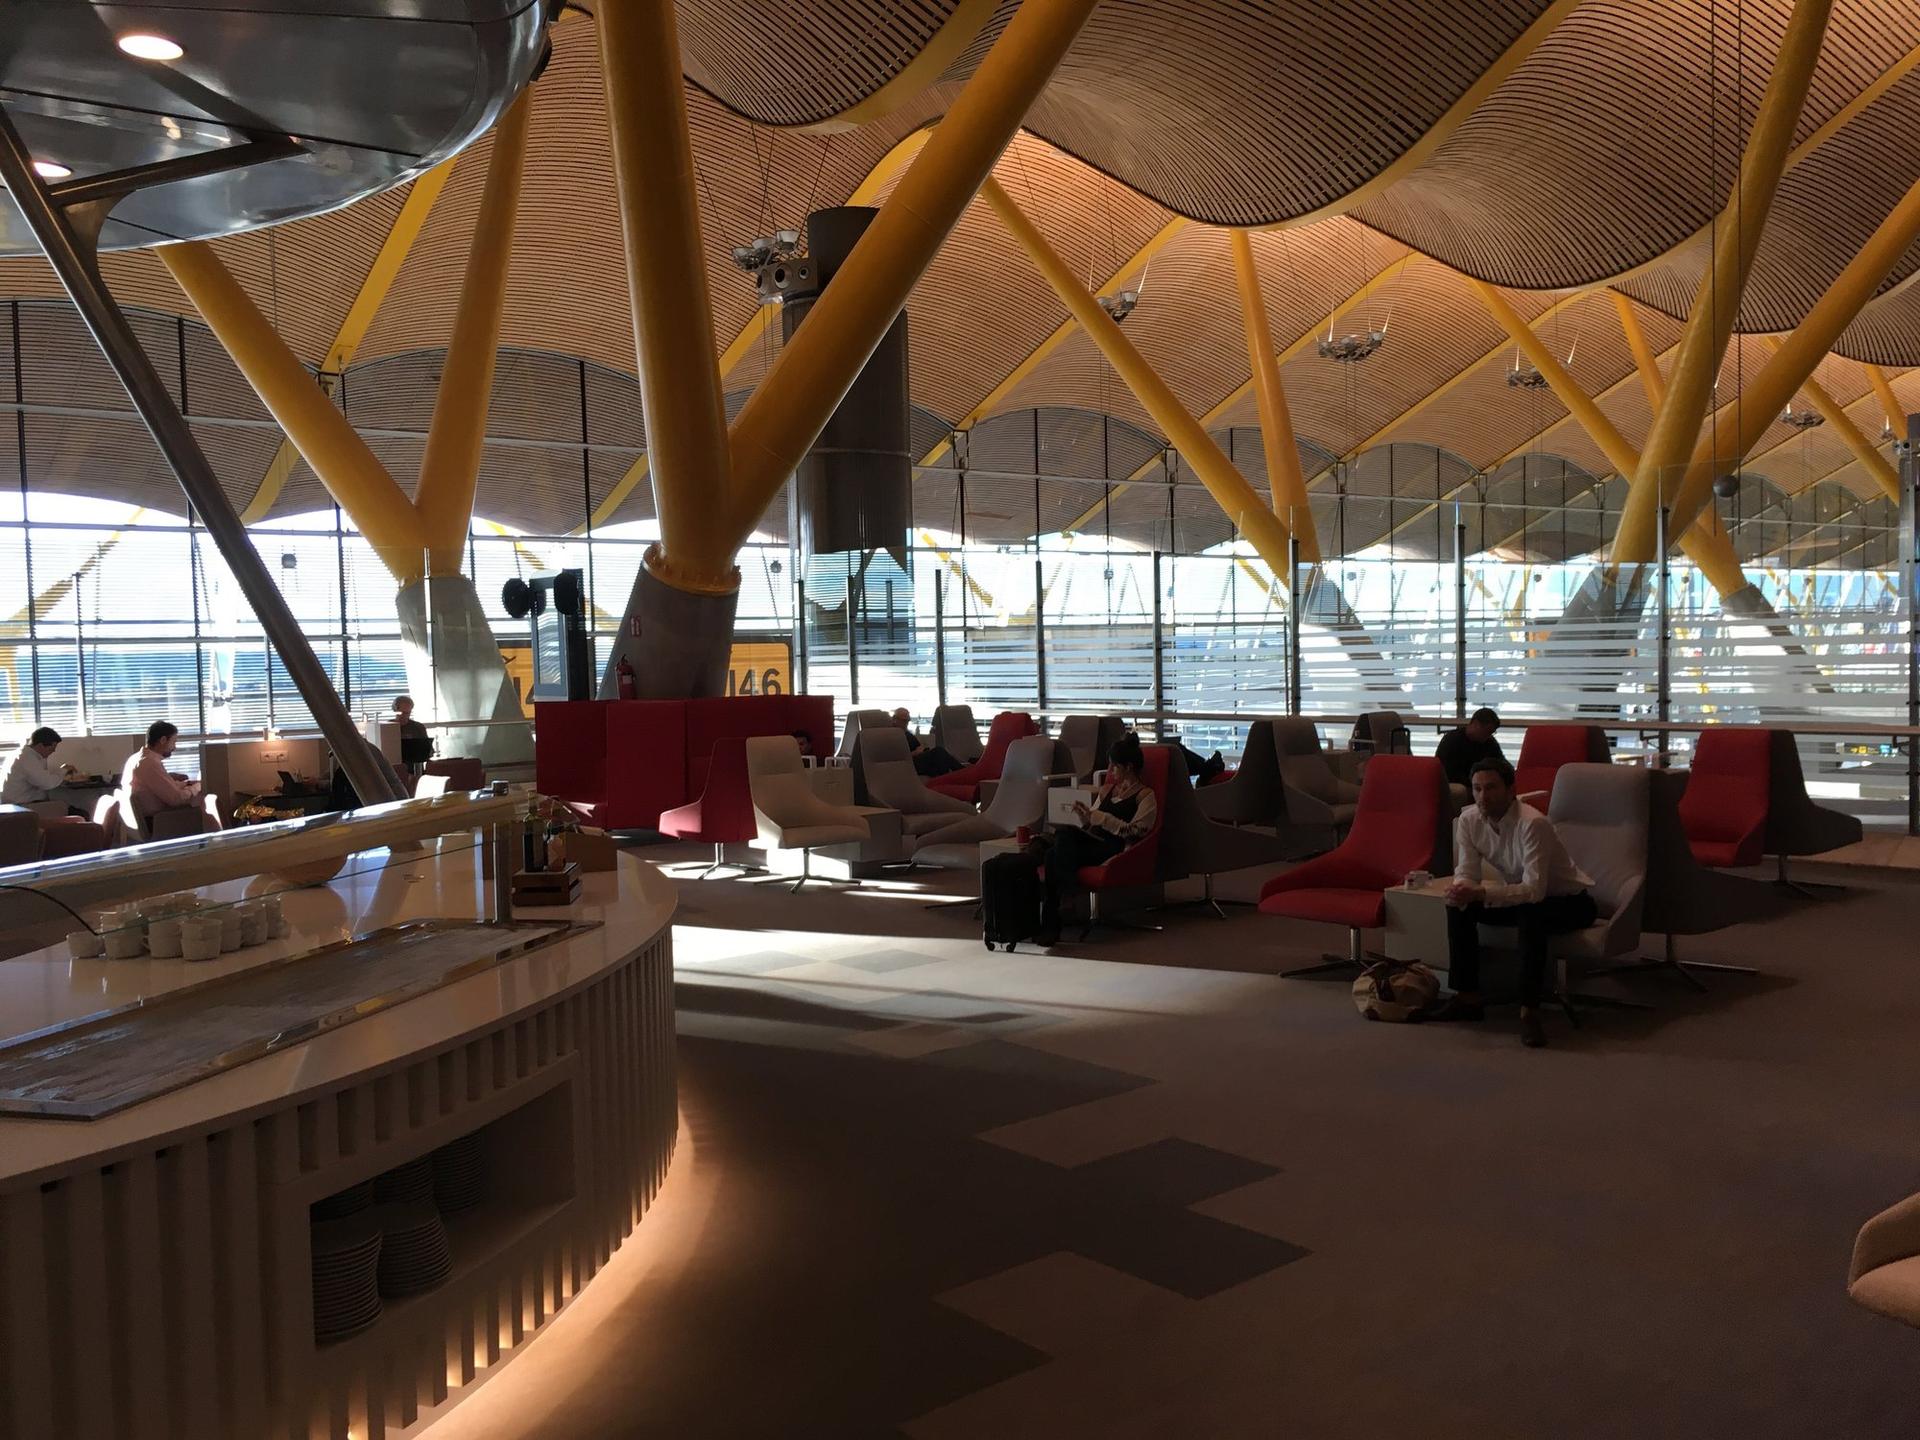 Iberia Dali Lounge image 17 of 27